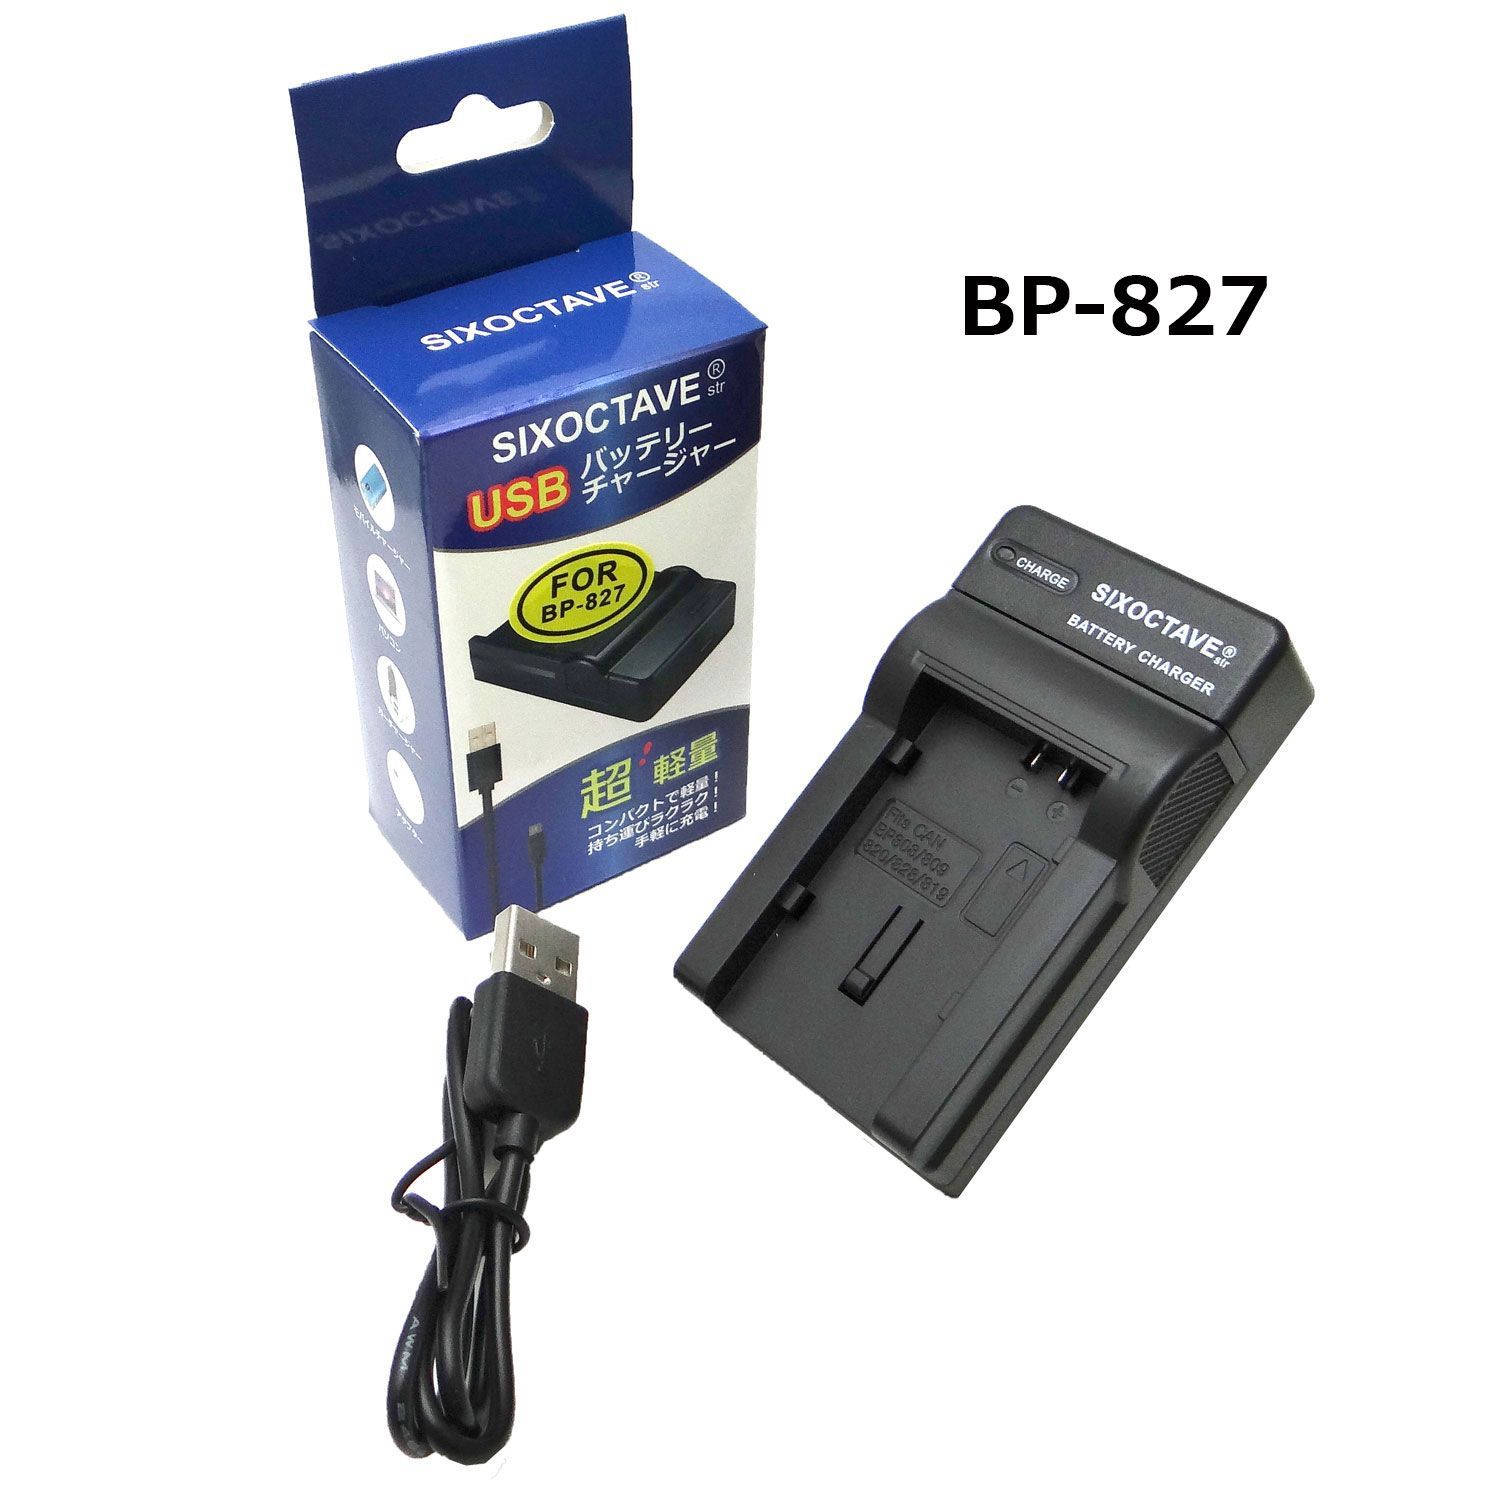 キャノン CG-800D / BP-827 SIXOCTAVE 互換USB充電器 - RKショップ